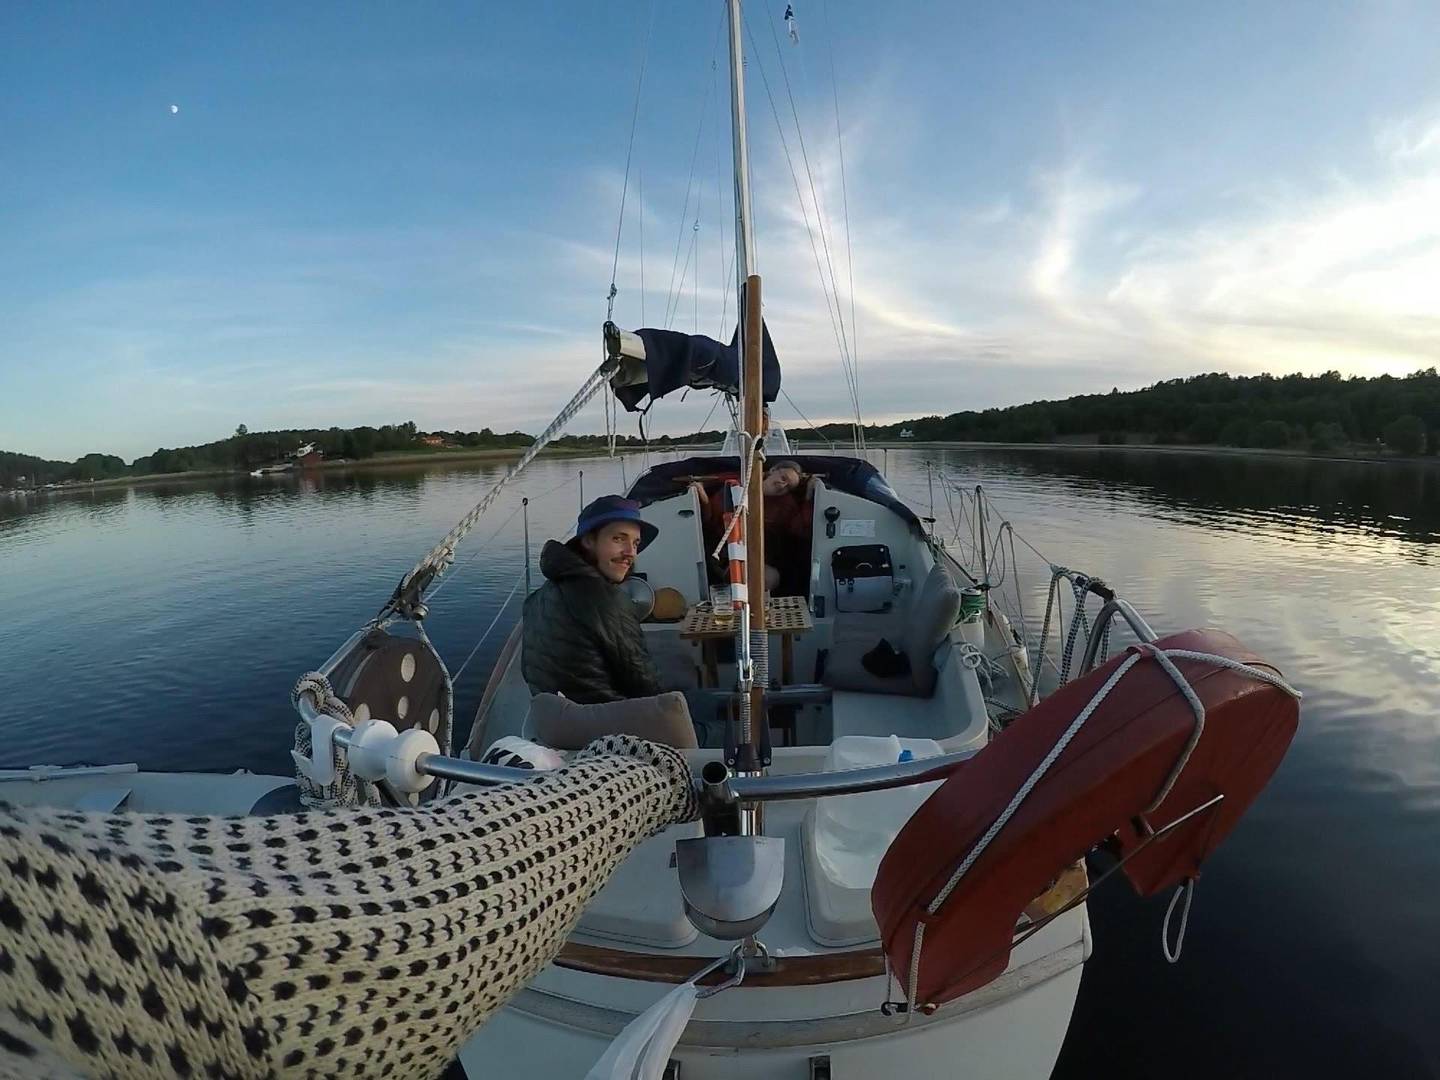 Bildet er av en seilbåt. Det er også mulig å se armen til fotografen som holder seg fast bak båten for å ta et bilde av hele båten ute på vannet.